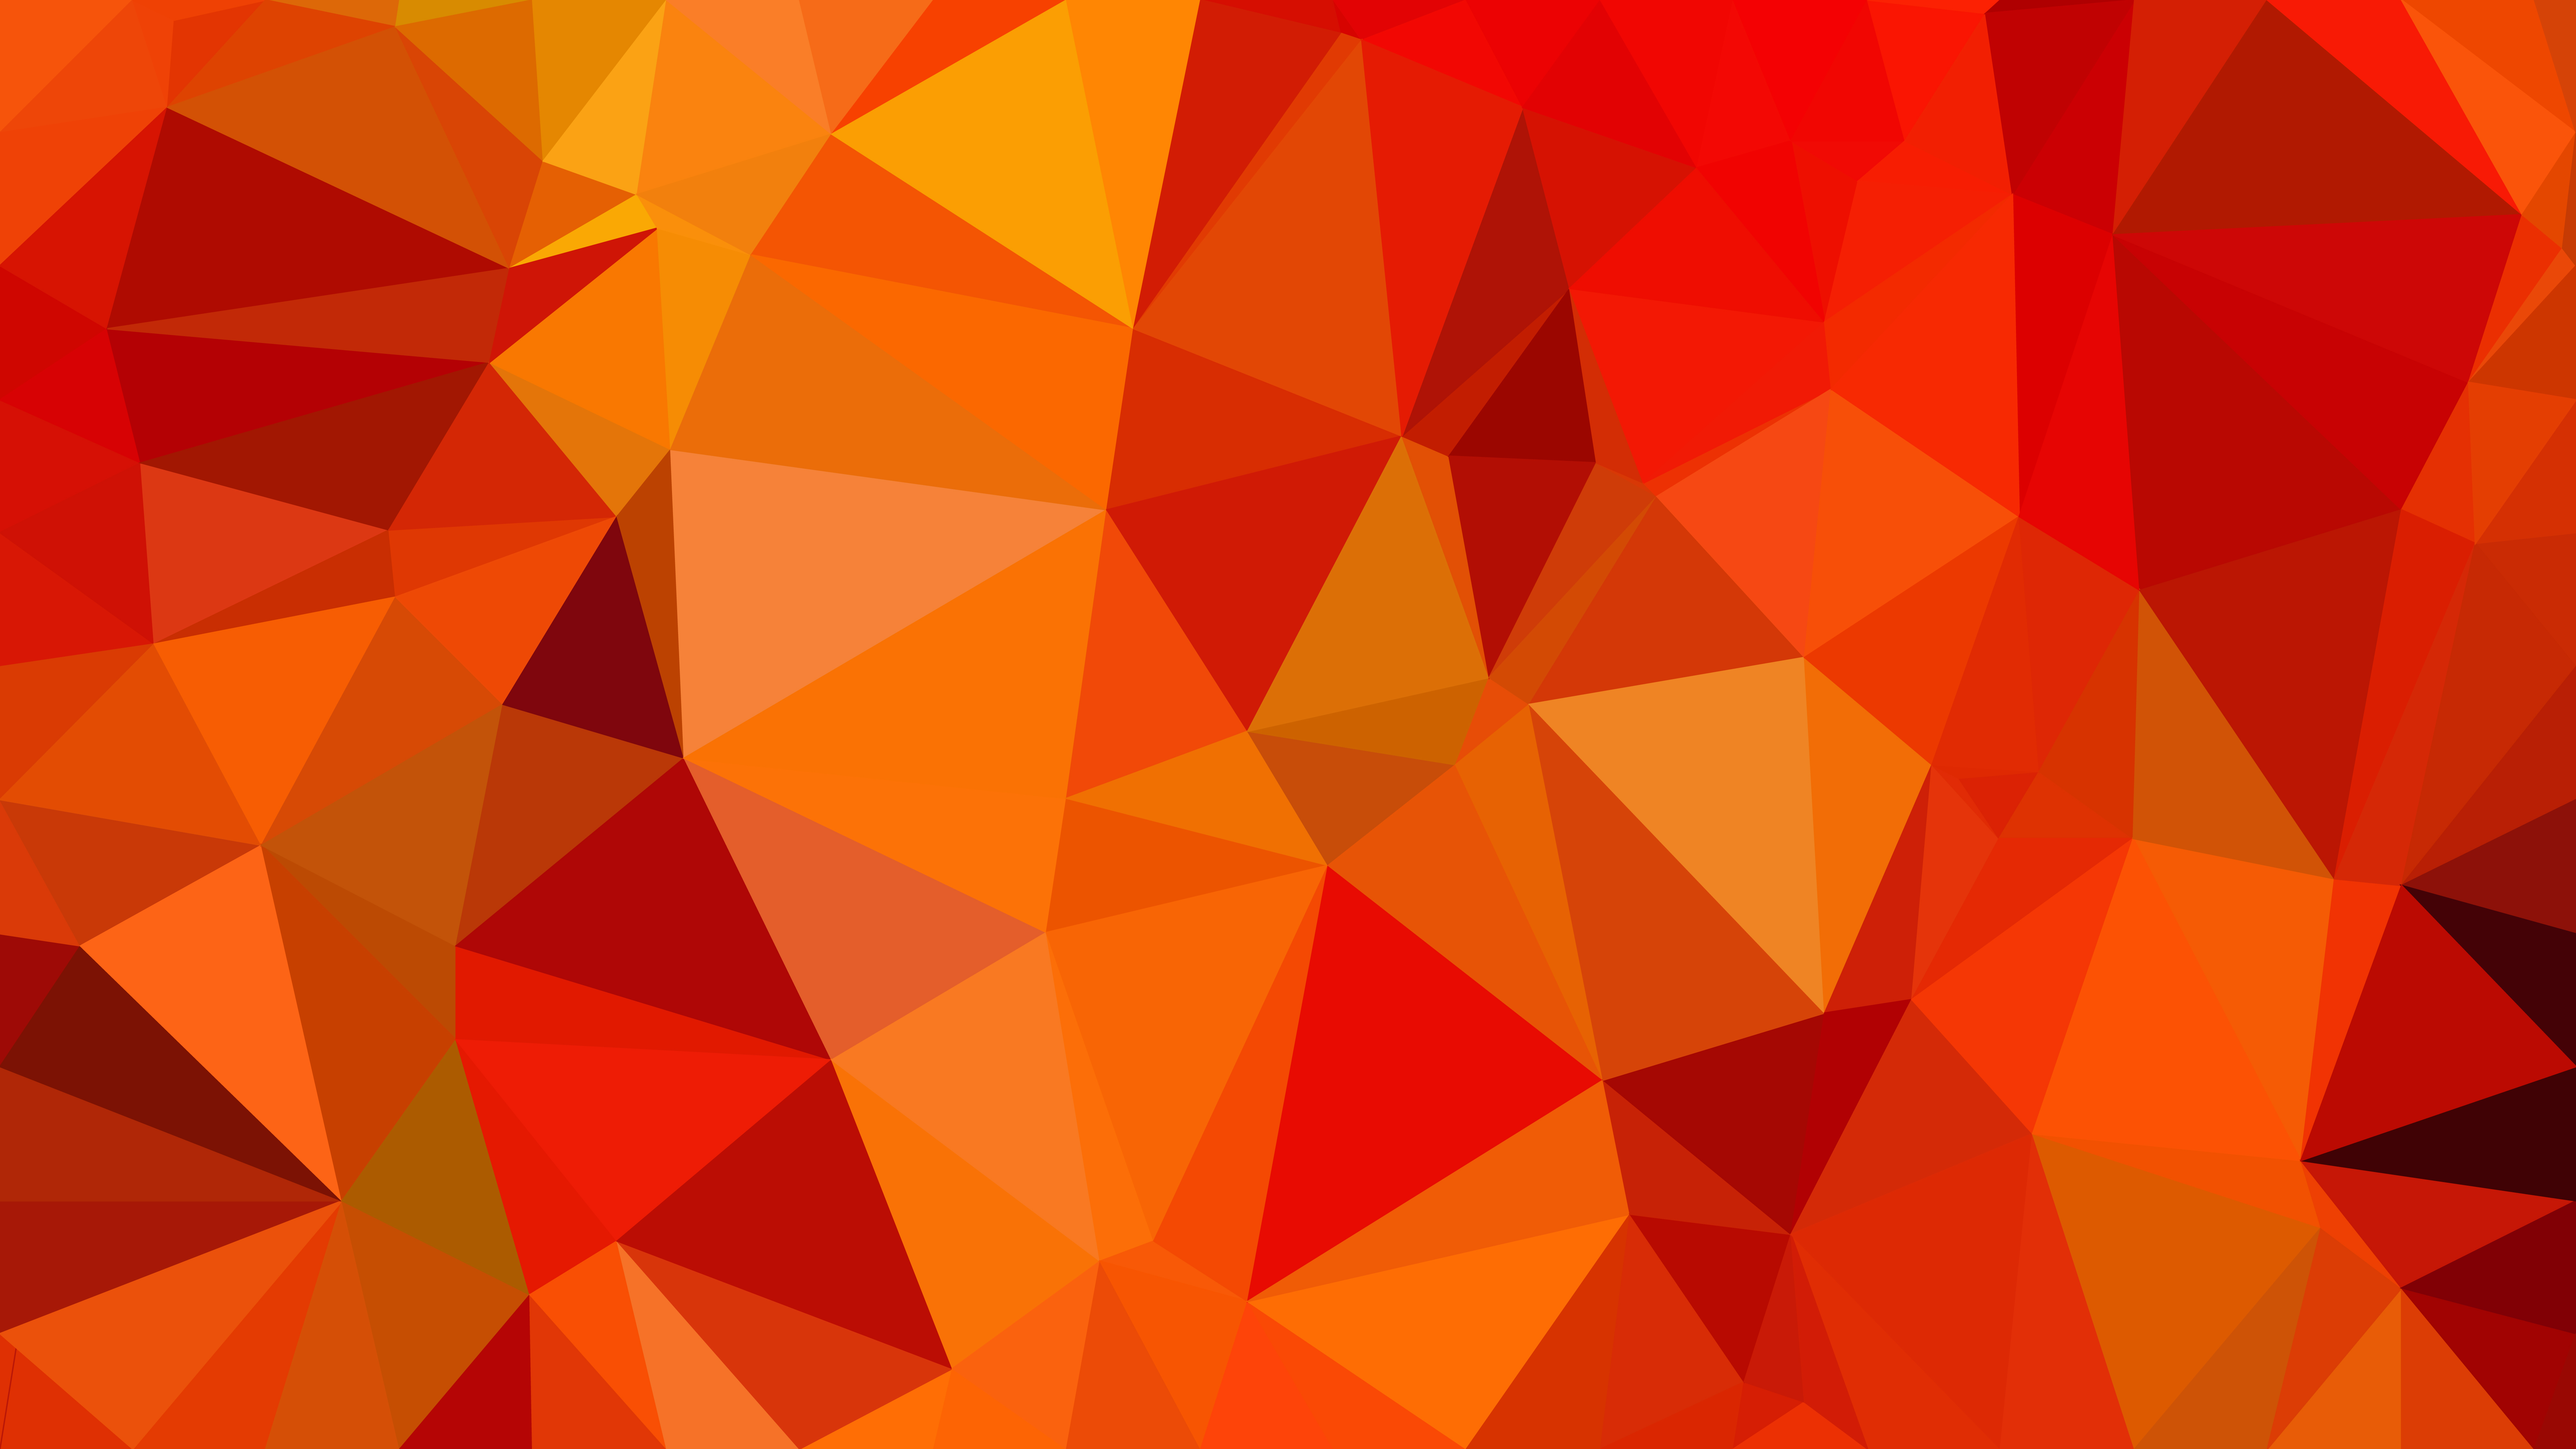 Hình nền đa giác miễn phí màu đỏ và cam: Đa giác màu sắc đang là trào lưu của giới trẻ hiện nay. Hãy tỏa sáng và xuất sắc hơn nhờ vào bộ hình nền sáng tạo này với các đa giác chói lóa, kết hợp màu đỏ và cam tạo nên một bức tranh sống động và đa dạng.